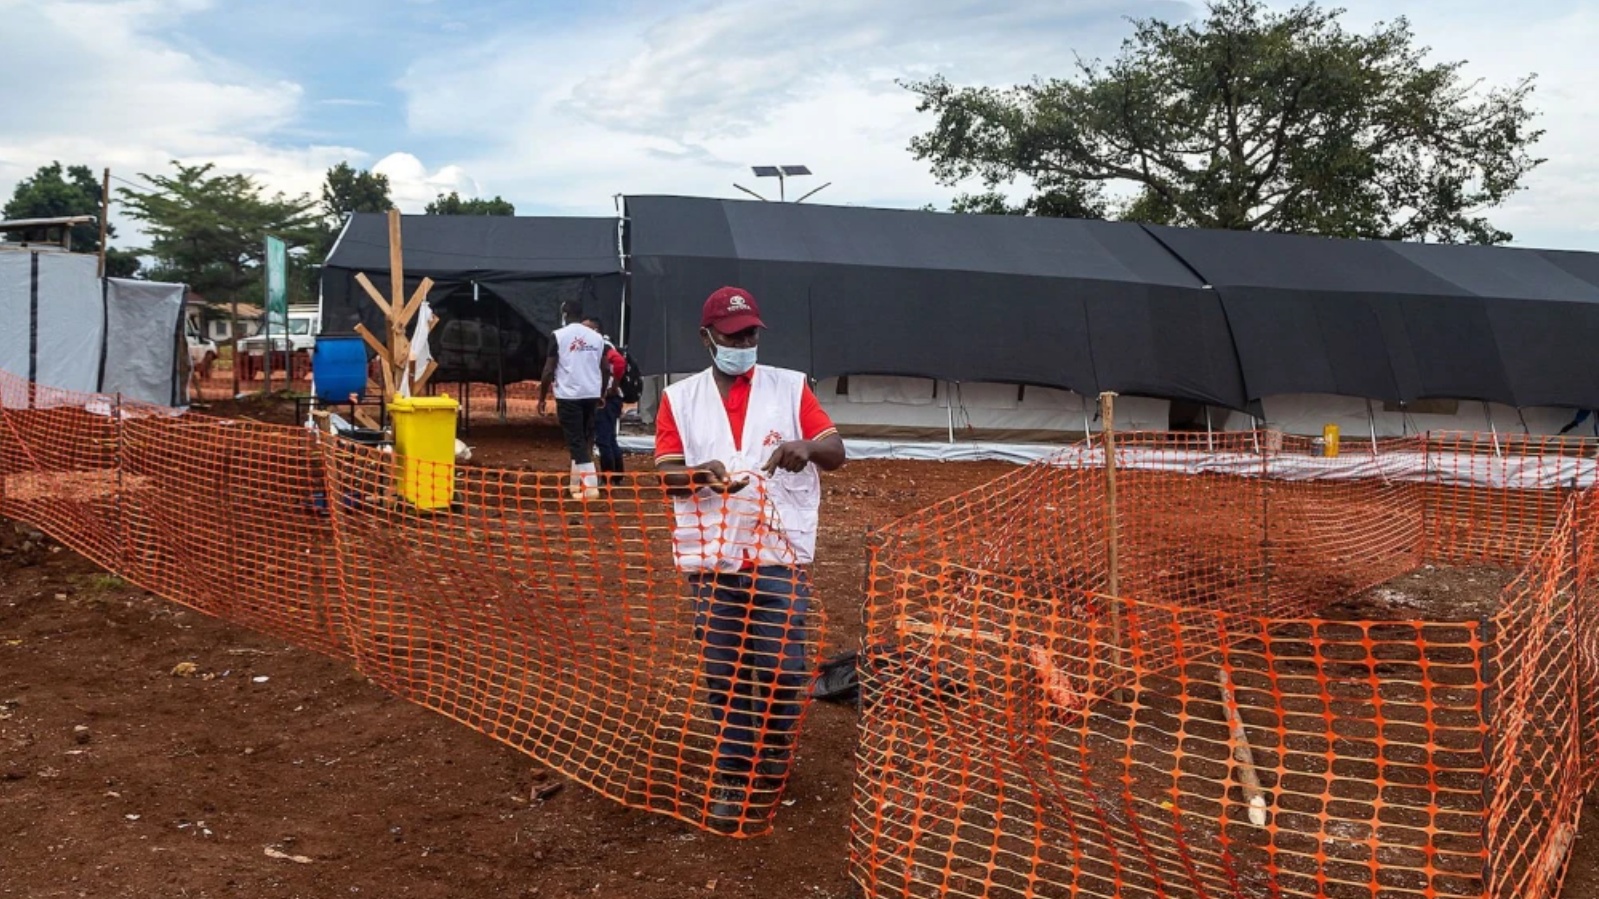 أقام أعضاء منظمة أطباء بلا حدود وحدة عزل لعلاج الإيبولا في مستشفى موبيندي الإقليمي للإحالة في أوغندا في 24 سبتمبر